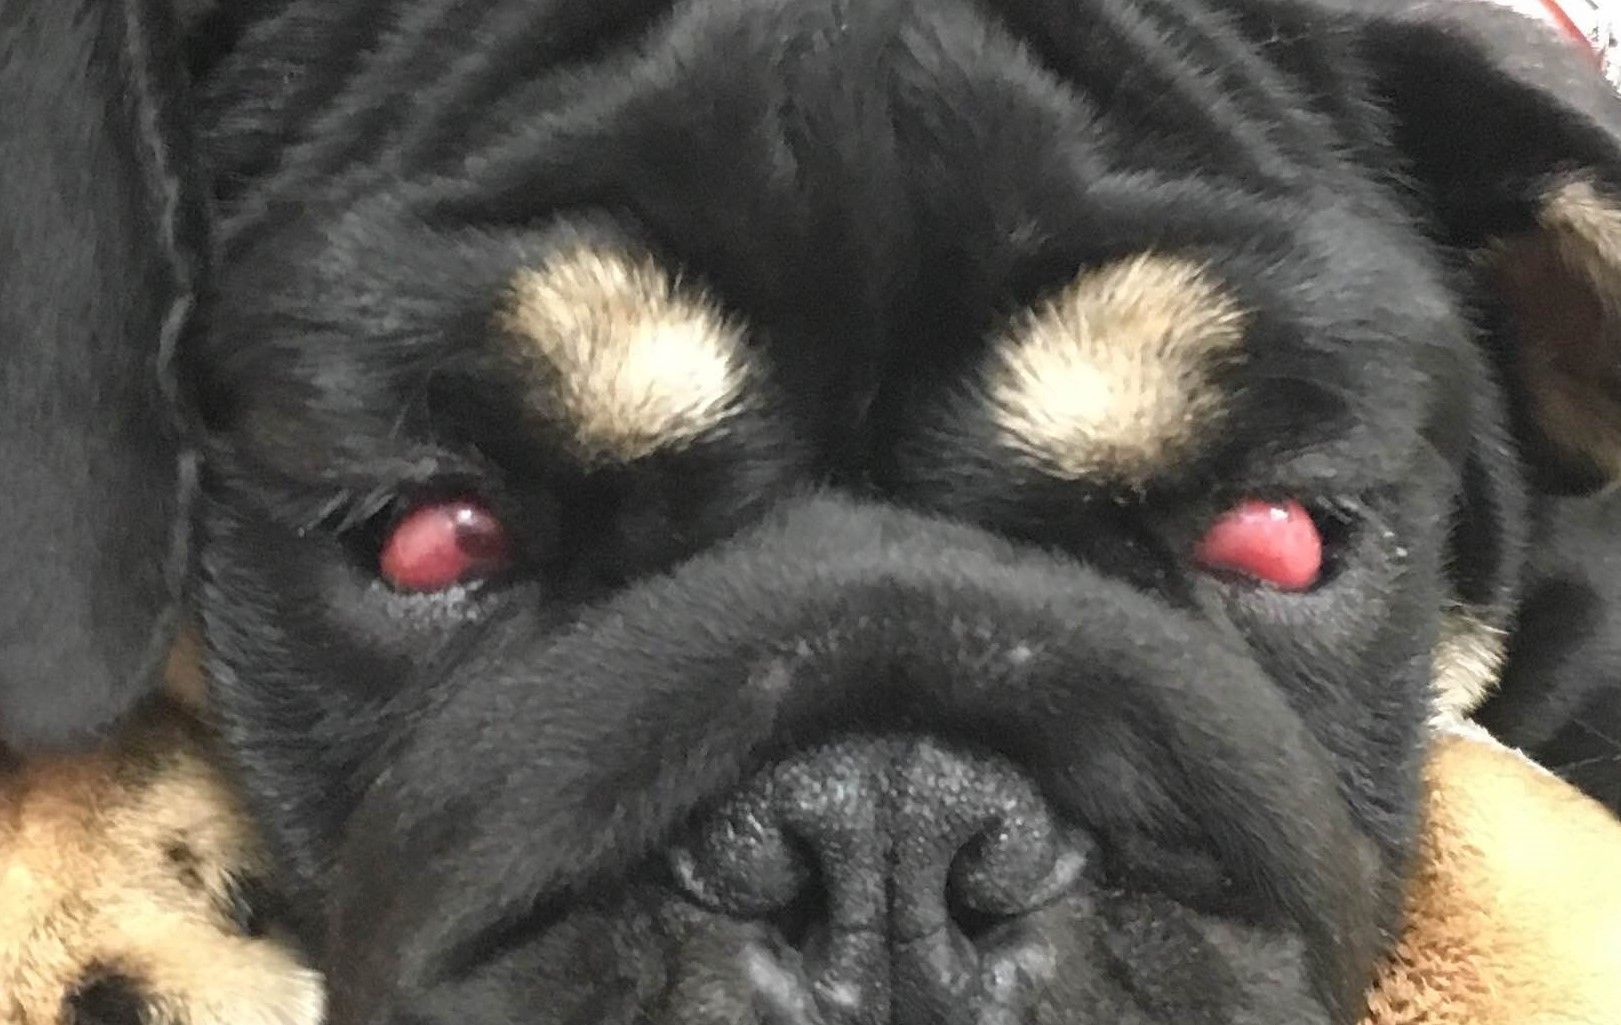 Cherry Eye in Dogs